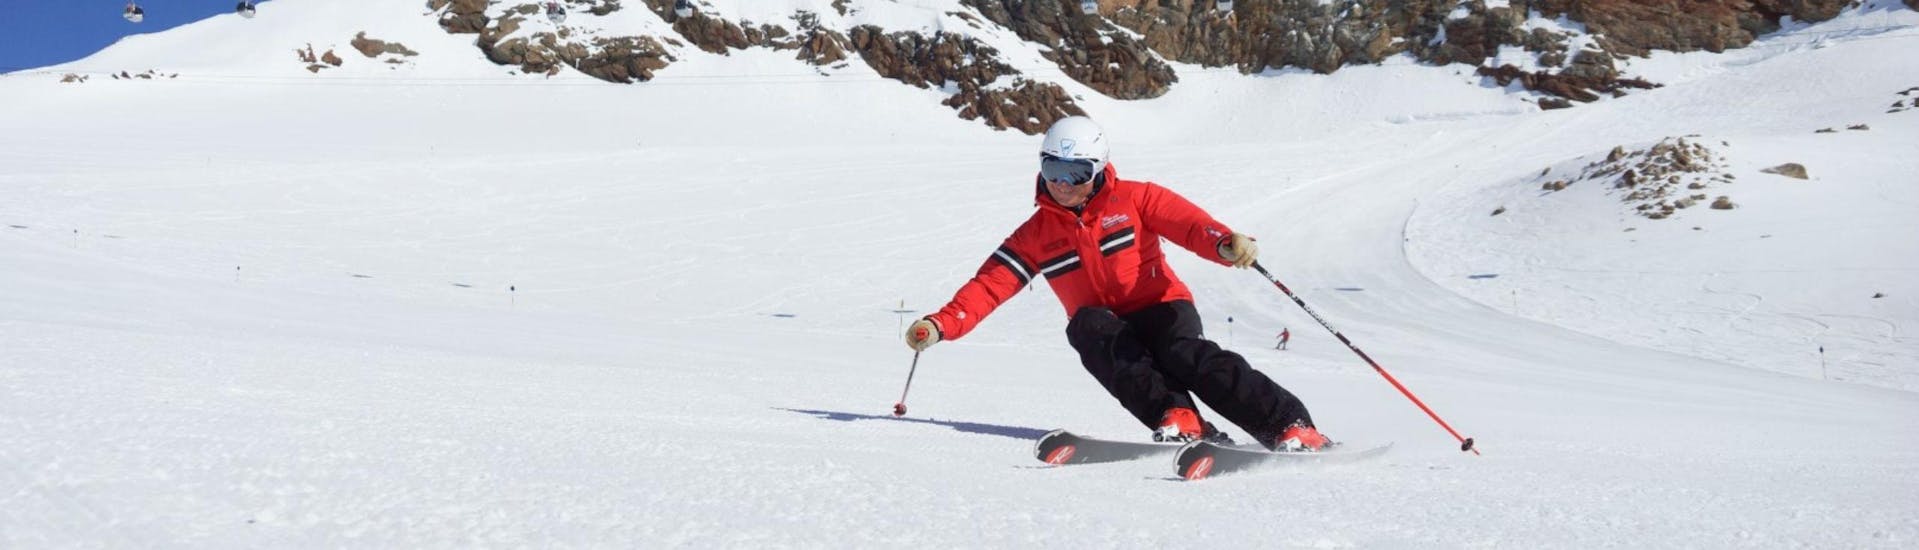 Un moniteur de ski de l'école de ski Ski- und Snowboardschule Vacancia montre la bonne technique de ski pendant l'une des cours de ski pour adultes "tout compris" - tous niveaux.